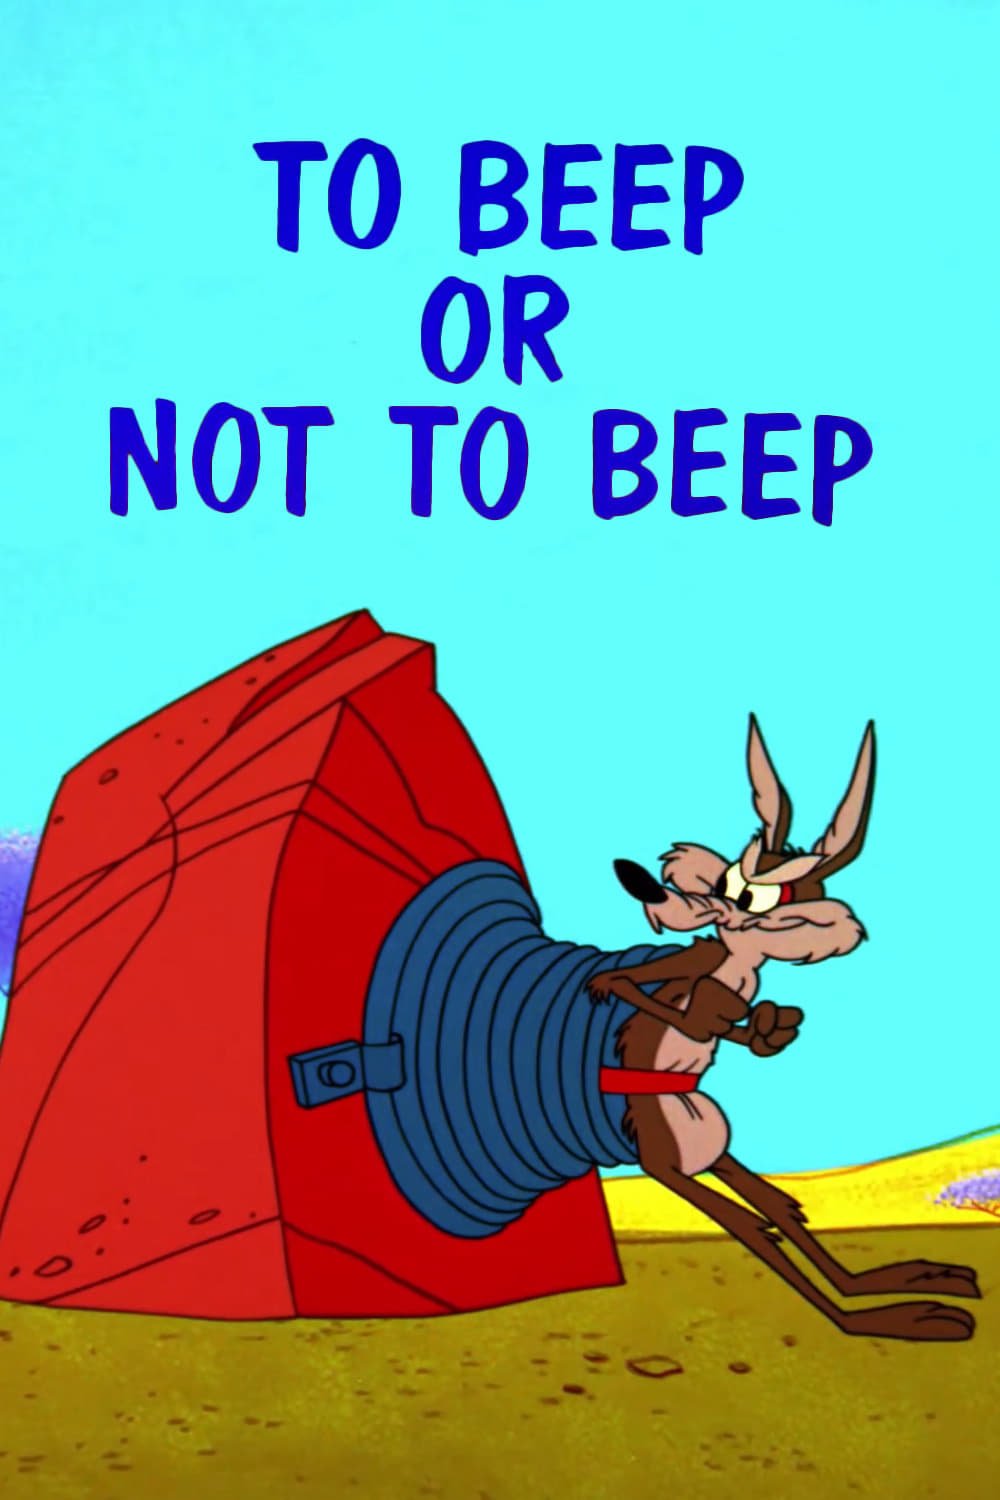 El Coyote y el Correcaminos: Beep o no beep, esa es la cuestión